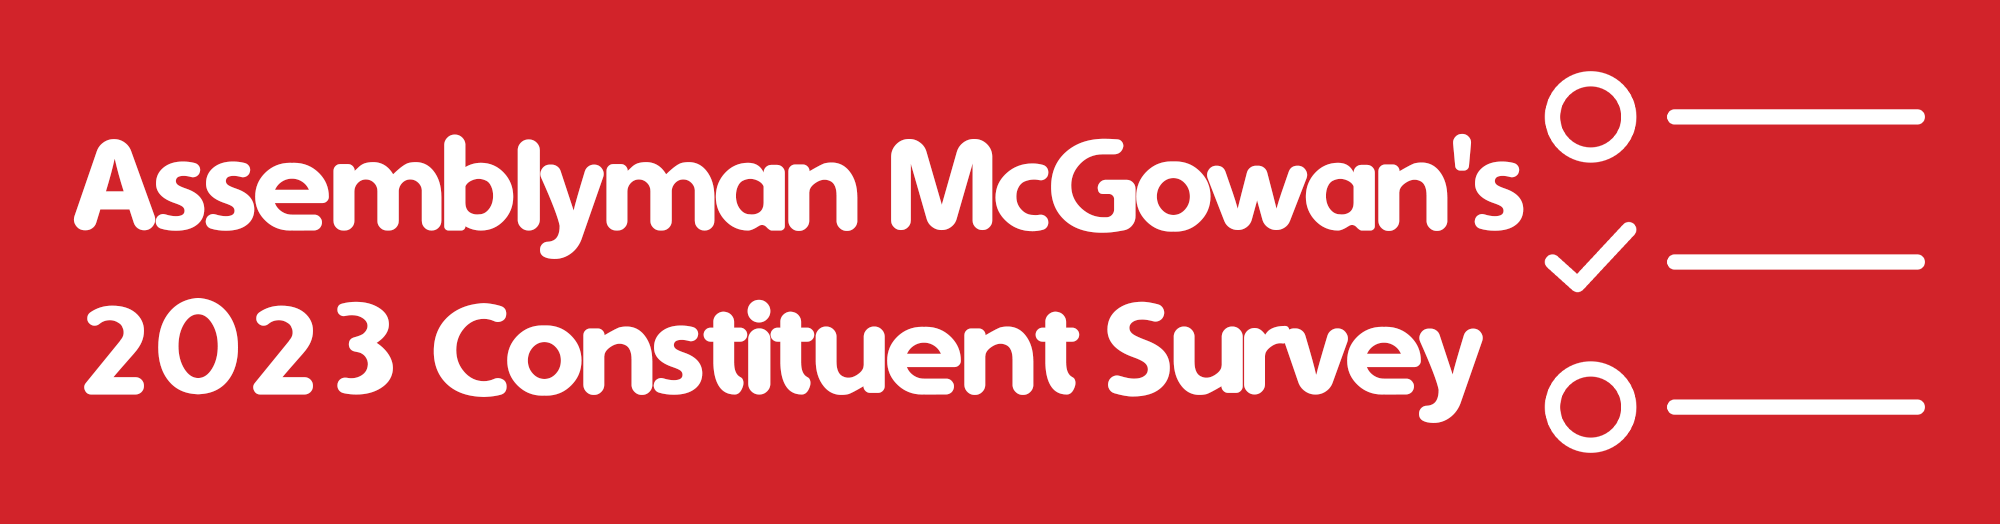 Assemblyman McGowan's 2023 Constituent Survey